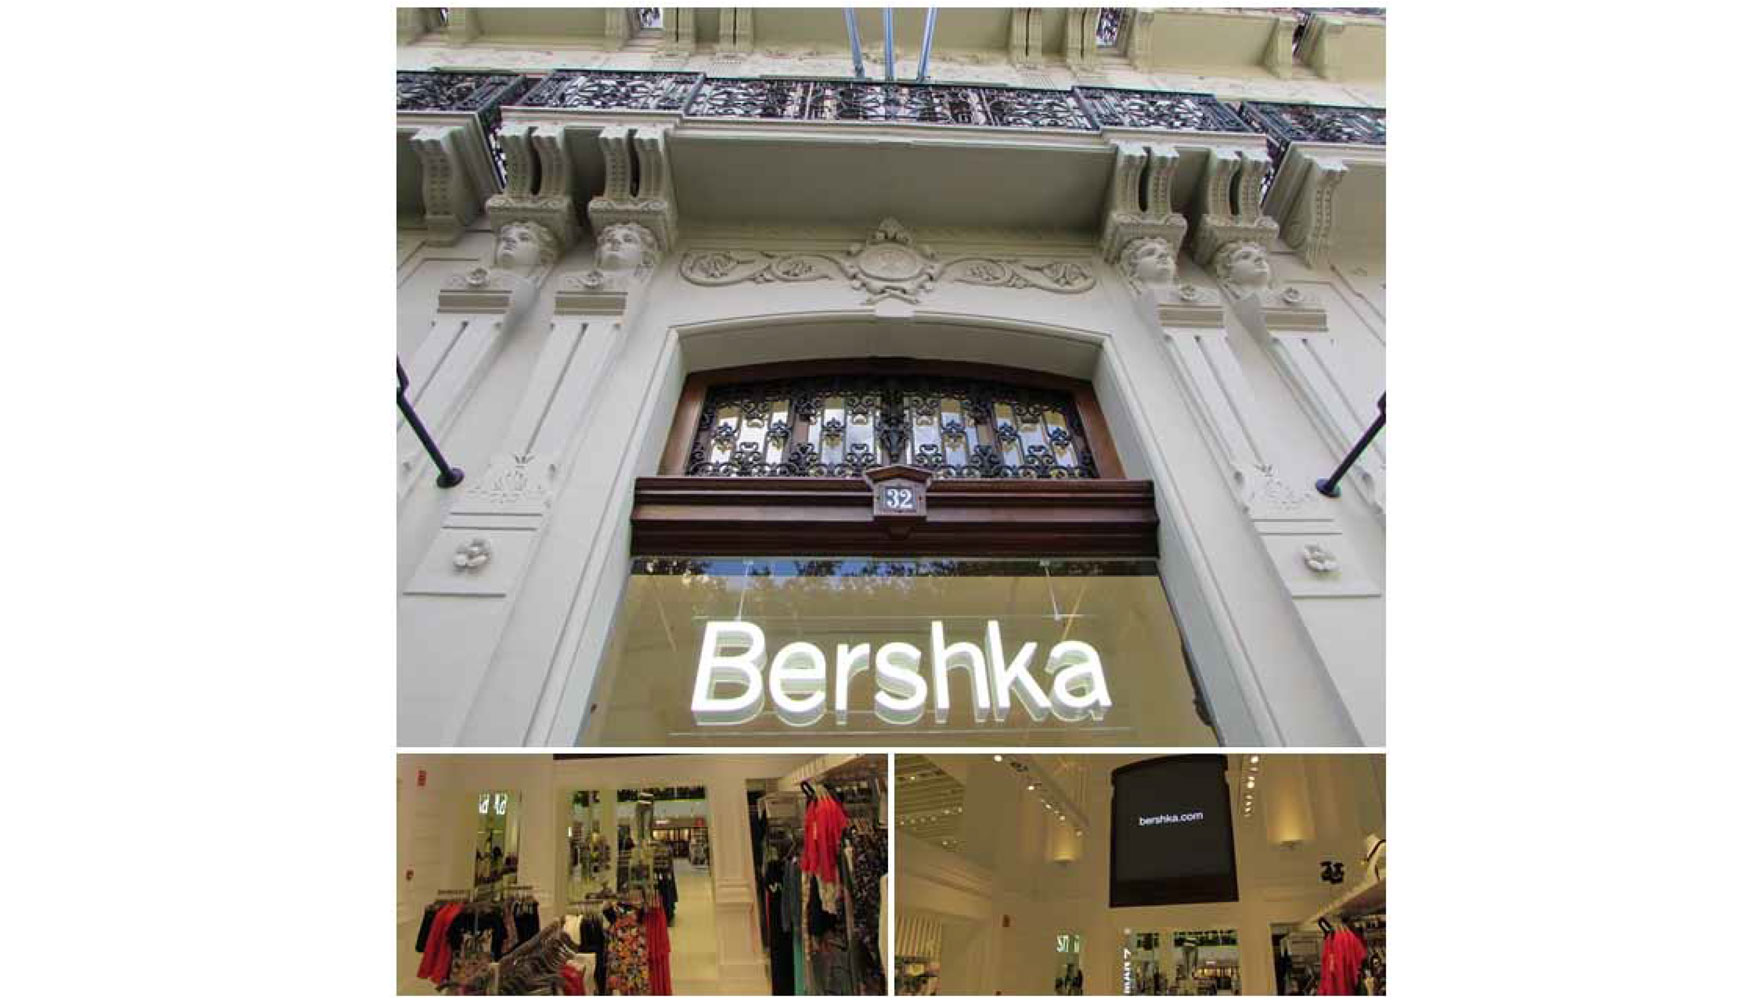 La certificación Leed Platino también abarca los interiores de superficies comerciales, como la tienda Bershka Colón en Valencia...